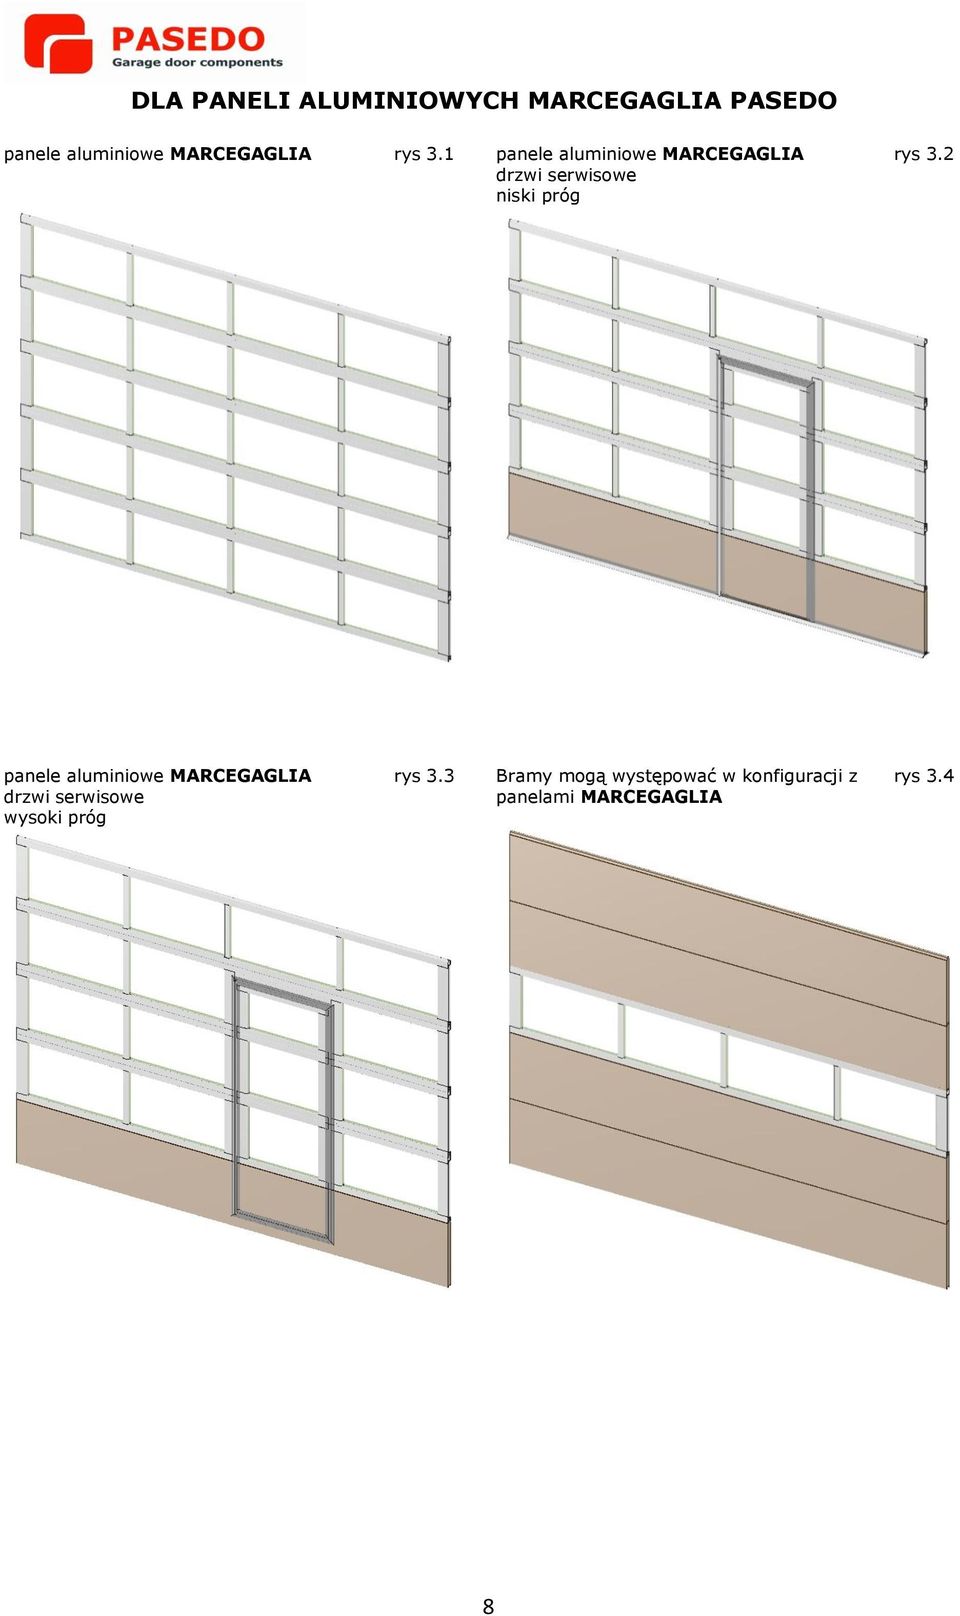 1 panele aluminiowe MARCEGAGLIA drzwi serwisowe niski próg rys 3.